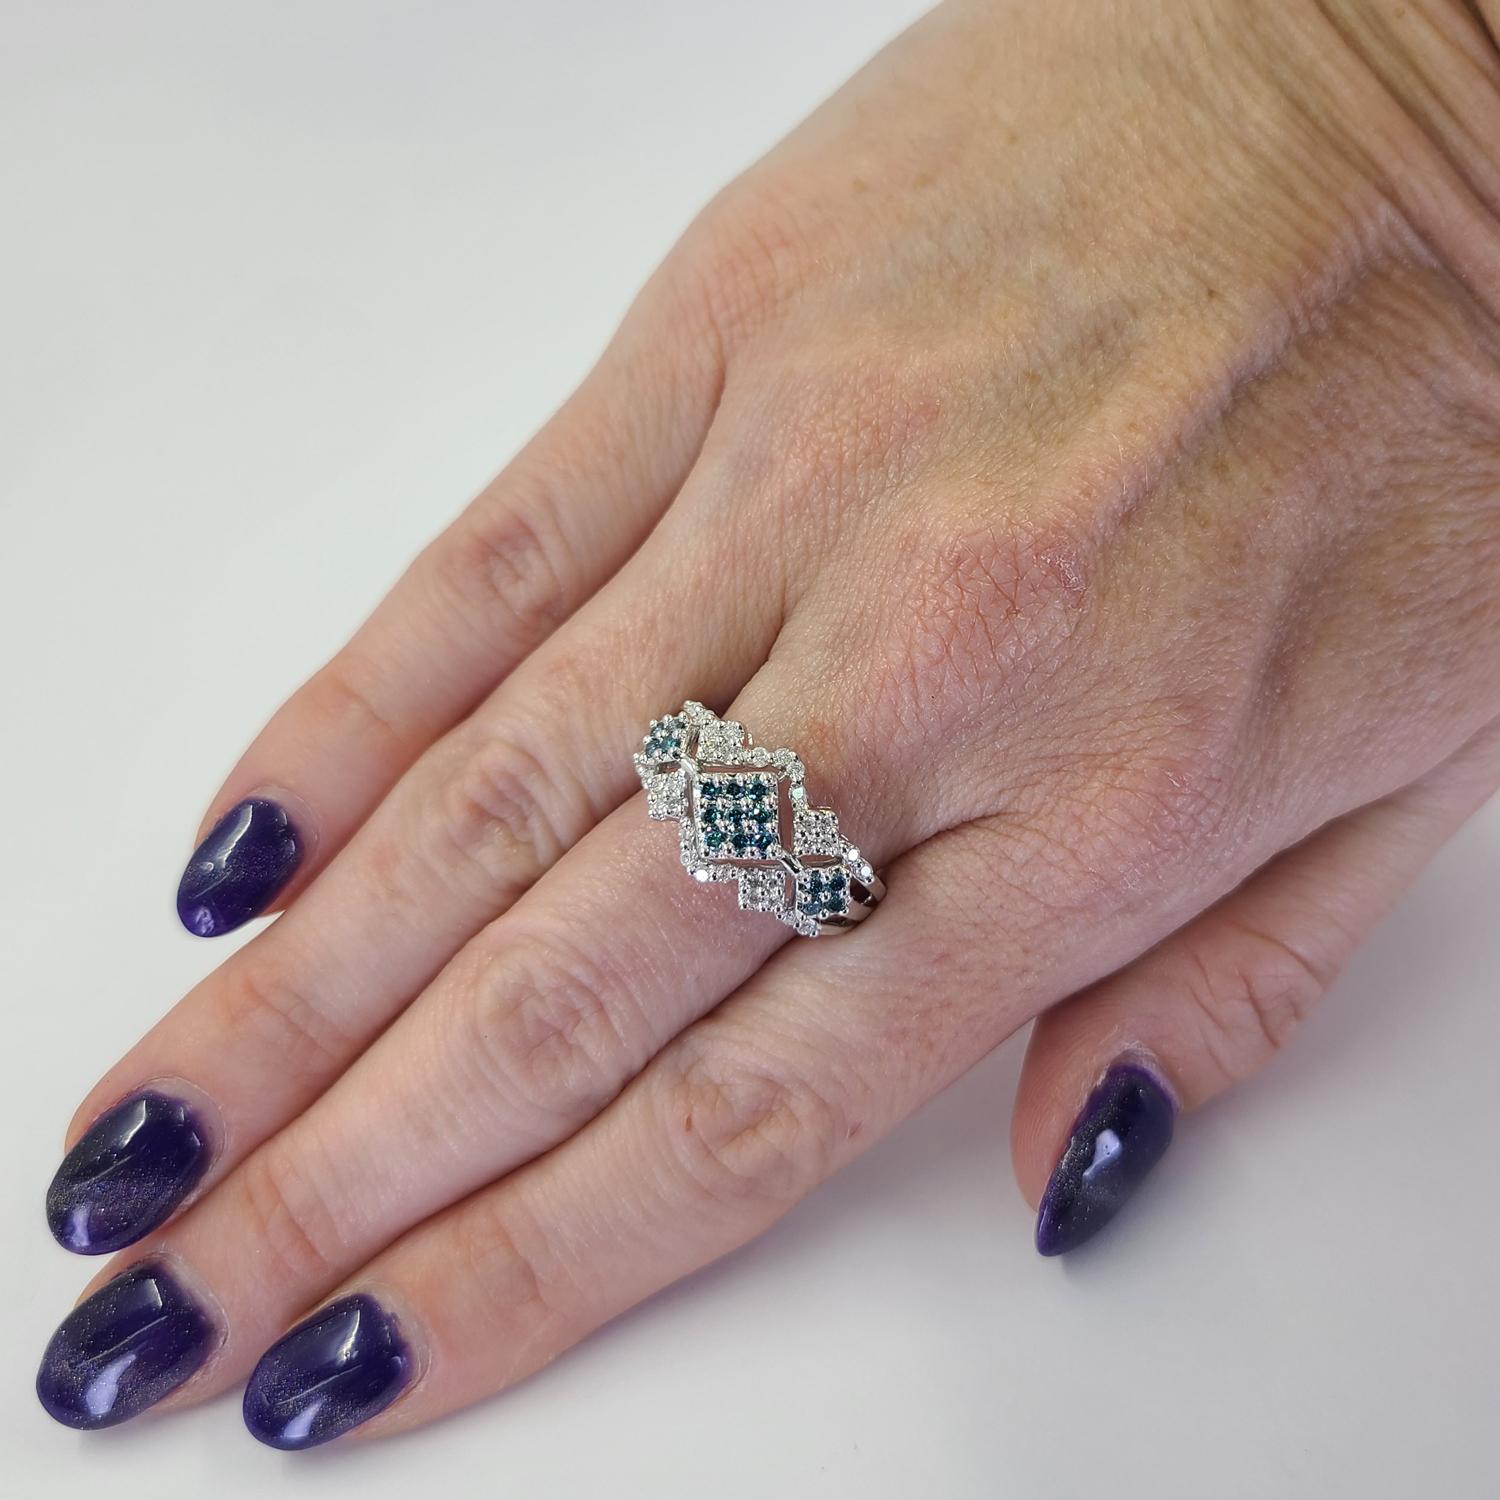 Spaß 14 Karat Weißgold Ring mit 17 runden behandelt Teal Diamanten insgesamt 0,17 Karat akzentuiert durch 32 runde Diamanten im Brillantschliff von SI Reinheit und H / I Farbe insgesamt 0,16 Karat. Aktuelle Fingergröße 8,5; ein kostenloser